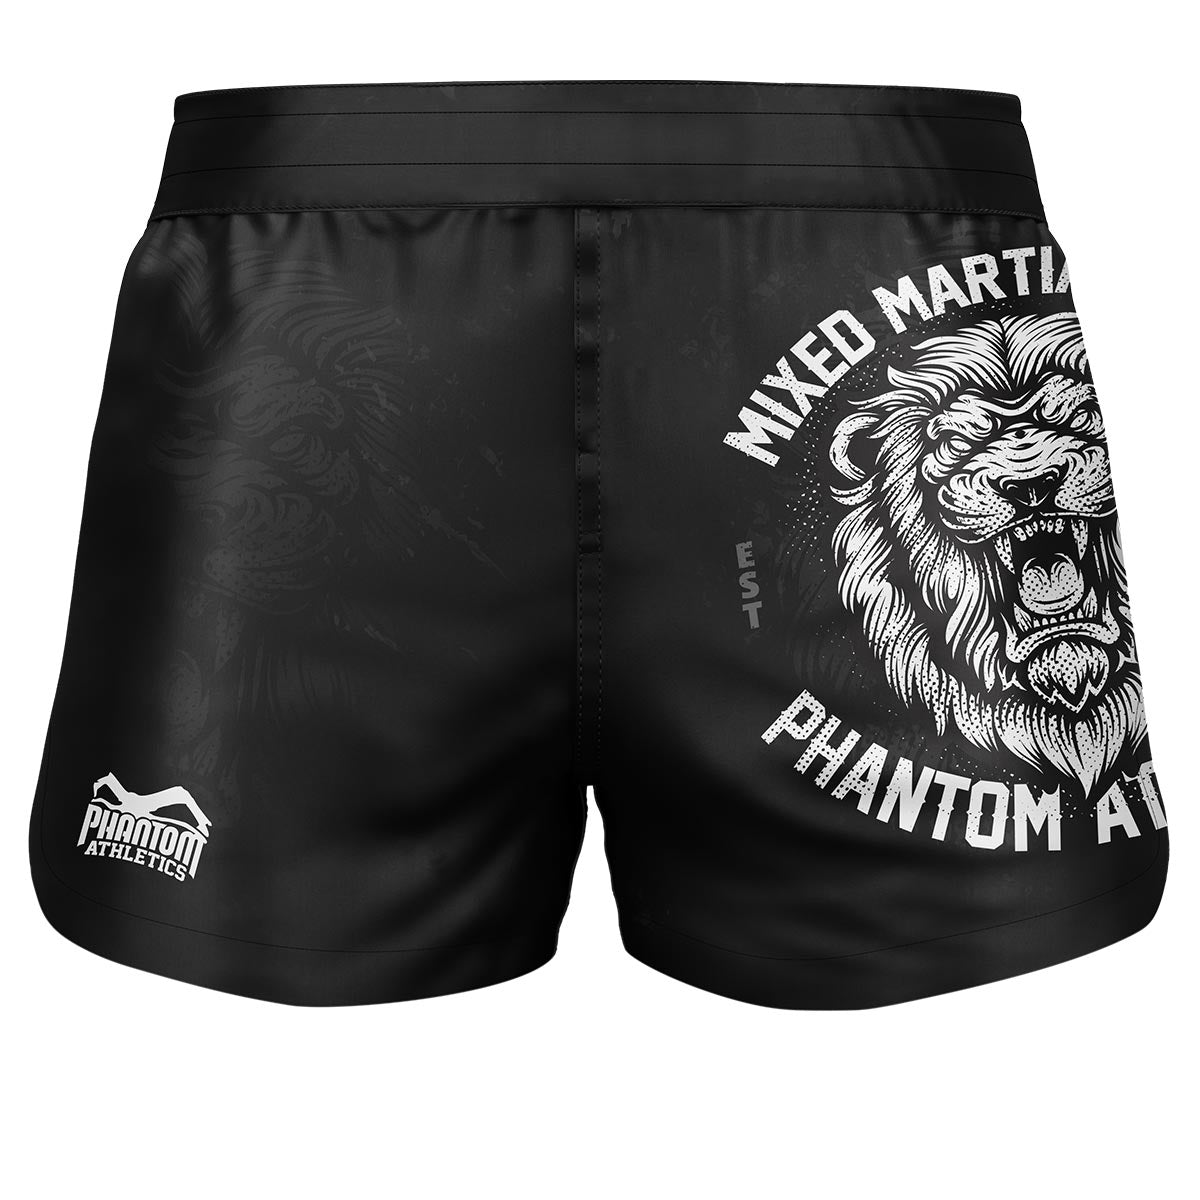 Short de combat Phantom Fusion 2en1. Short ultime pour vos arts martiaux. Idéal pour le MMA, le Muay Thai, le BJJ, la lutte et plus encore. En noir avec motif lion.